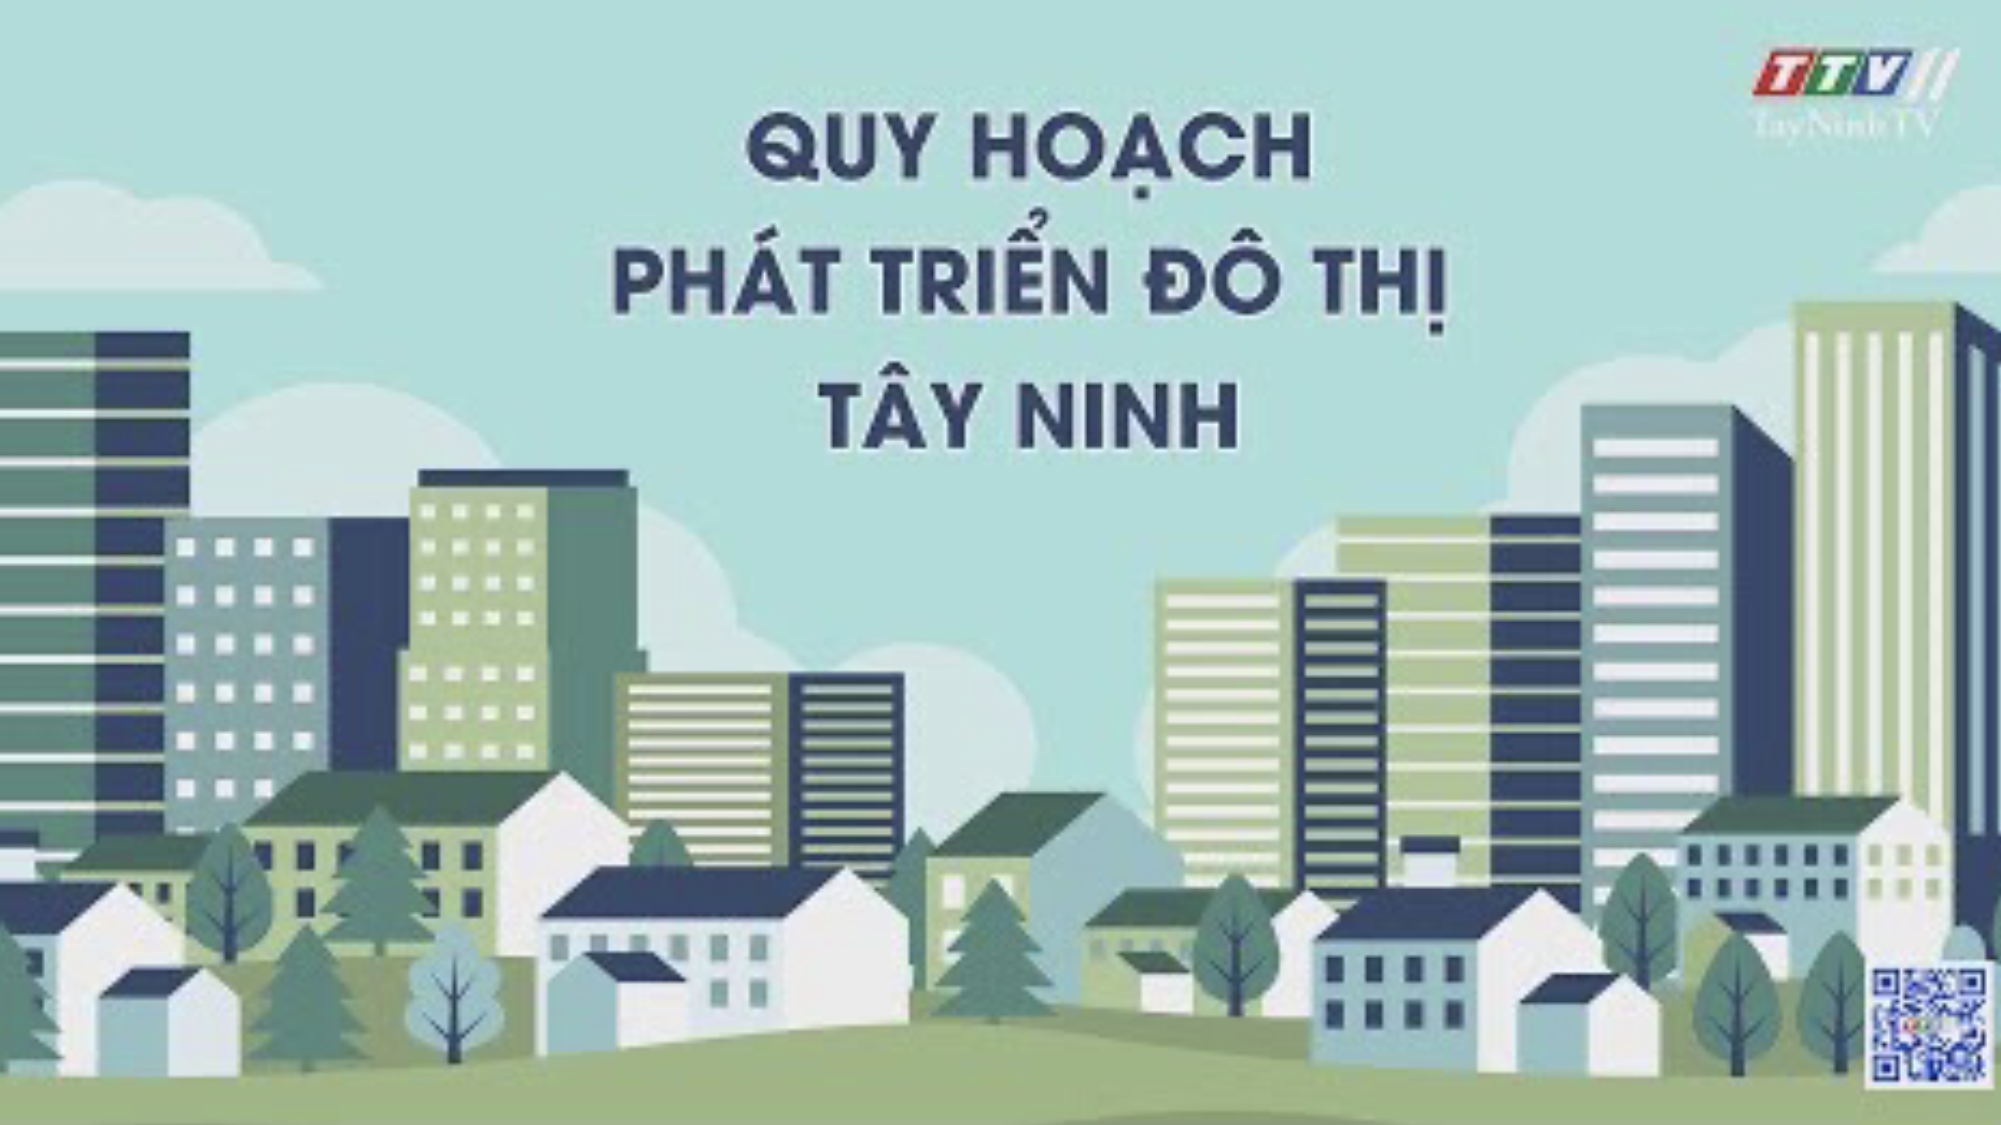 Quy hoạch phát triển đô thị Tây Ninh | Những vấn đề hôm nay | TayNinhTV